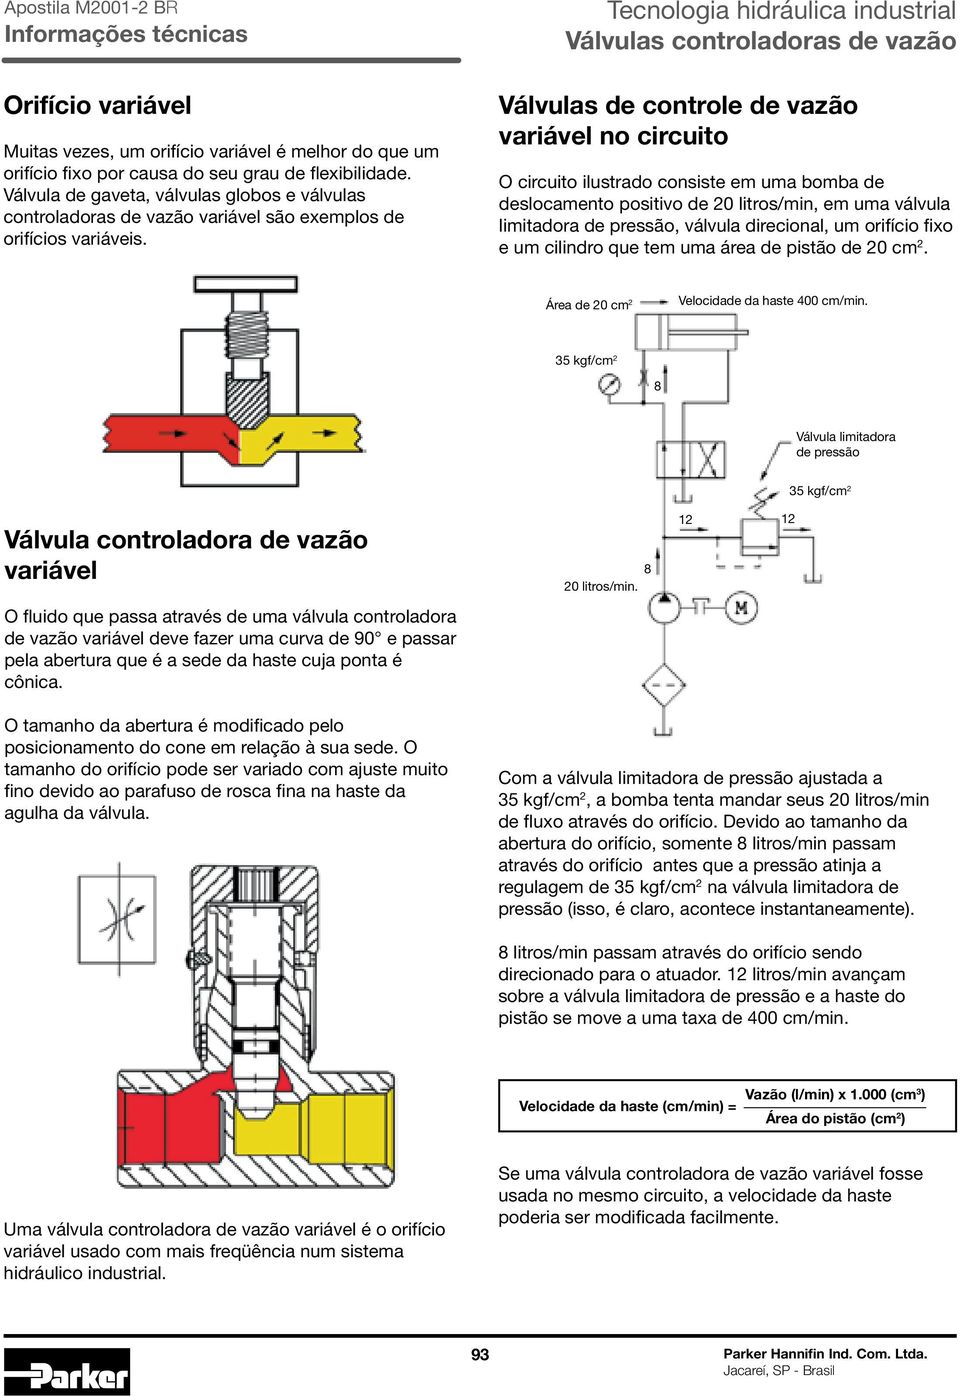 Válvulas de controle de vazão variável no circuito O circuito ilustrado consiste em uma bomba de deslocamento positivo de 20 litros/min, em uma válvula limitadora de pressão, válvula direcional, um